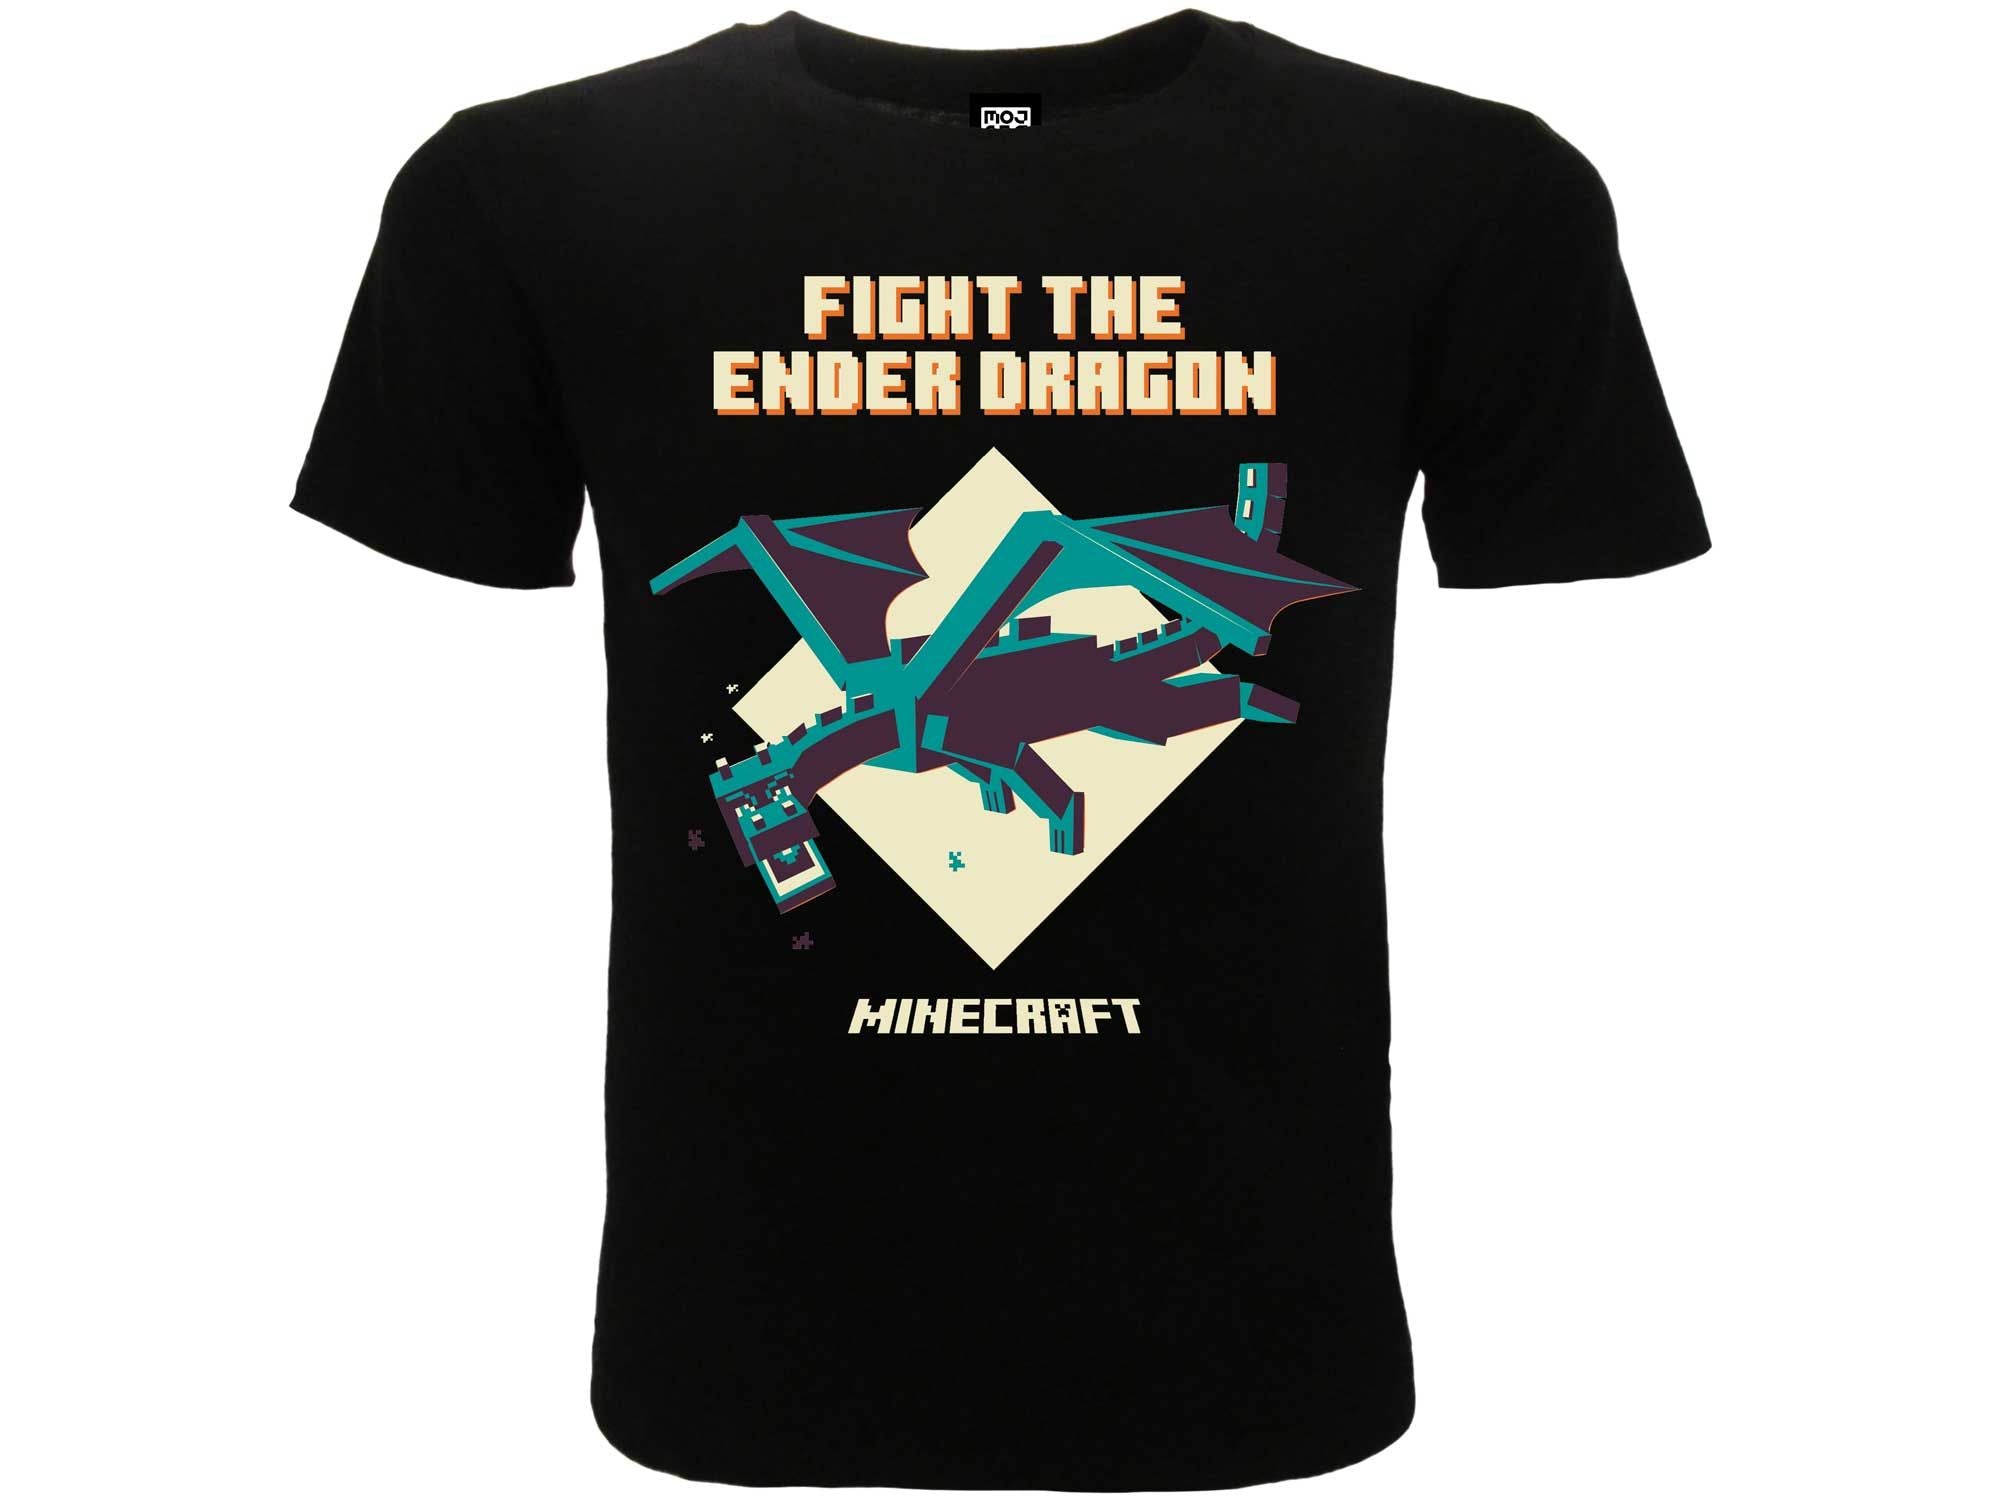 MINECRAFT - "Fight the ender dragon" T-shirt 9/11 anni nera - Disponibile in 2/3 giorni lavorativi